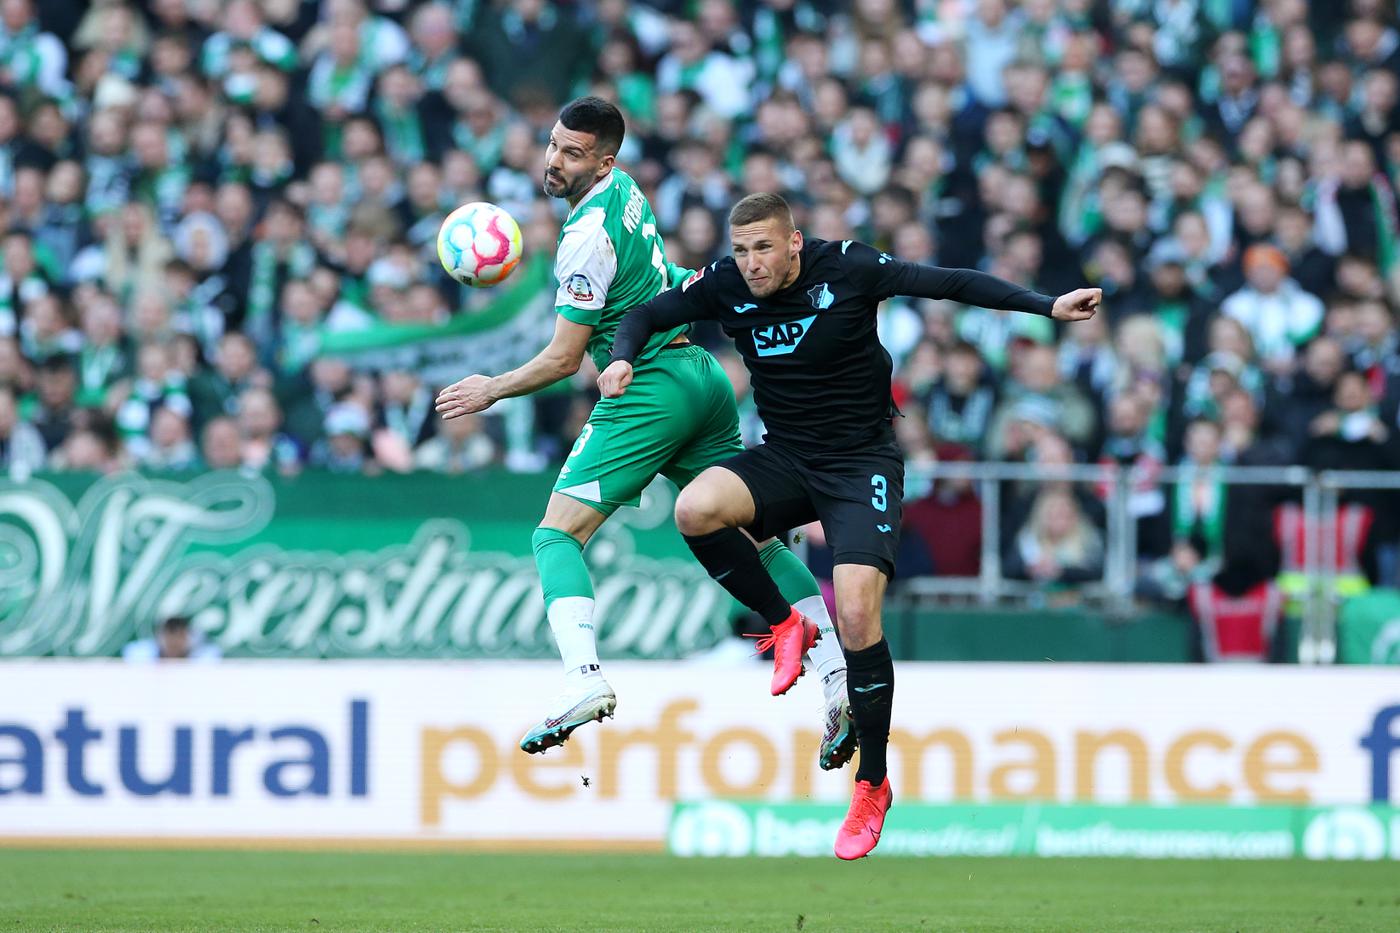 Werder Bremen - Hoffenheim - 1:2. German Championship, 26th round. Match review, statistics